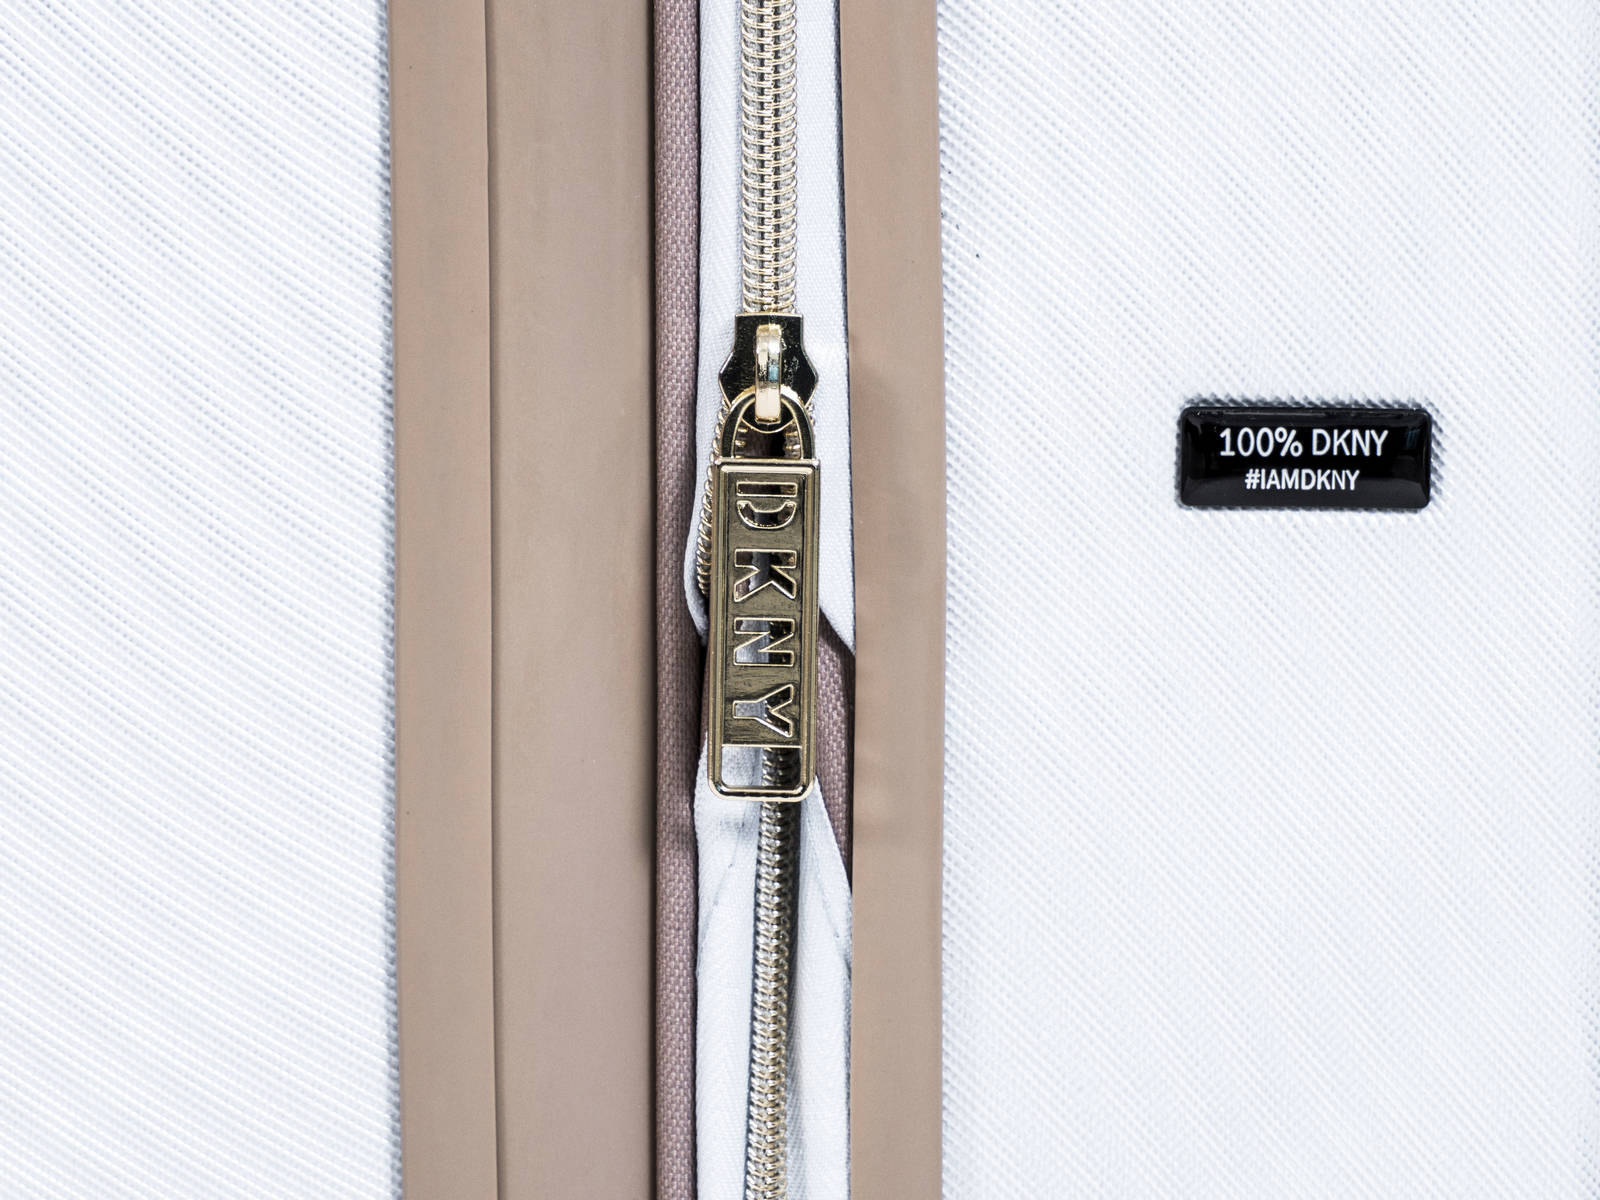 ✮✮מזוודה גדולה 28" אופנתית מבית מעצבת העל Donna Karan DKNY דגם ALCHEMY